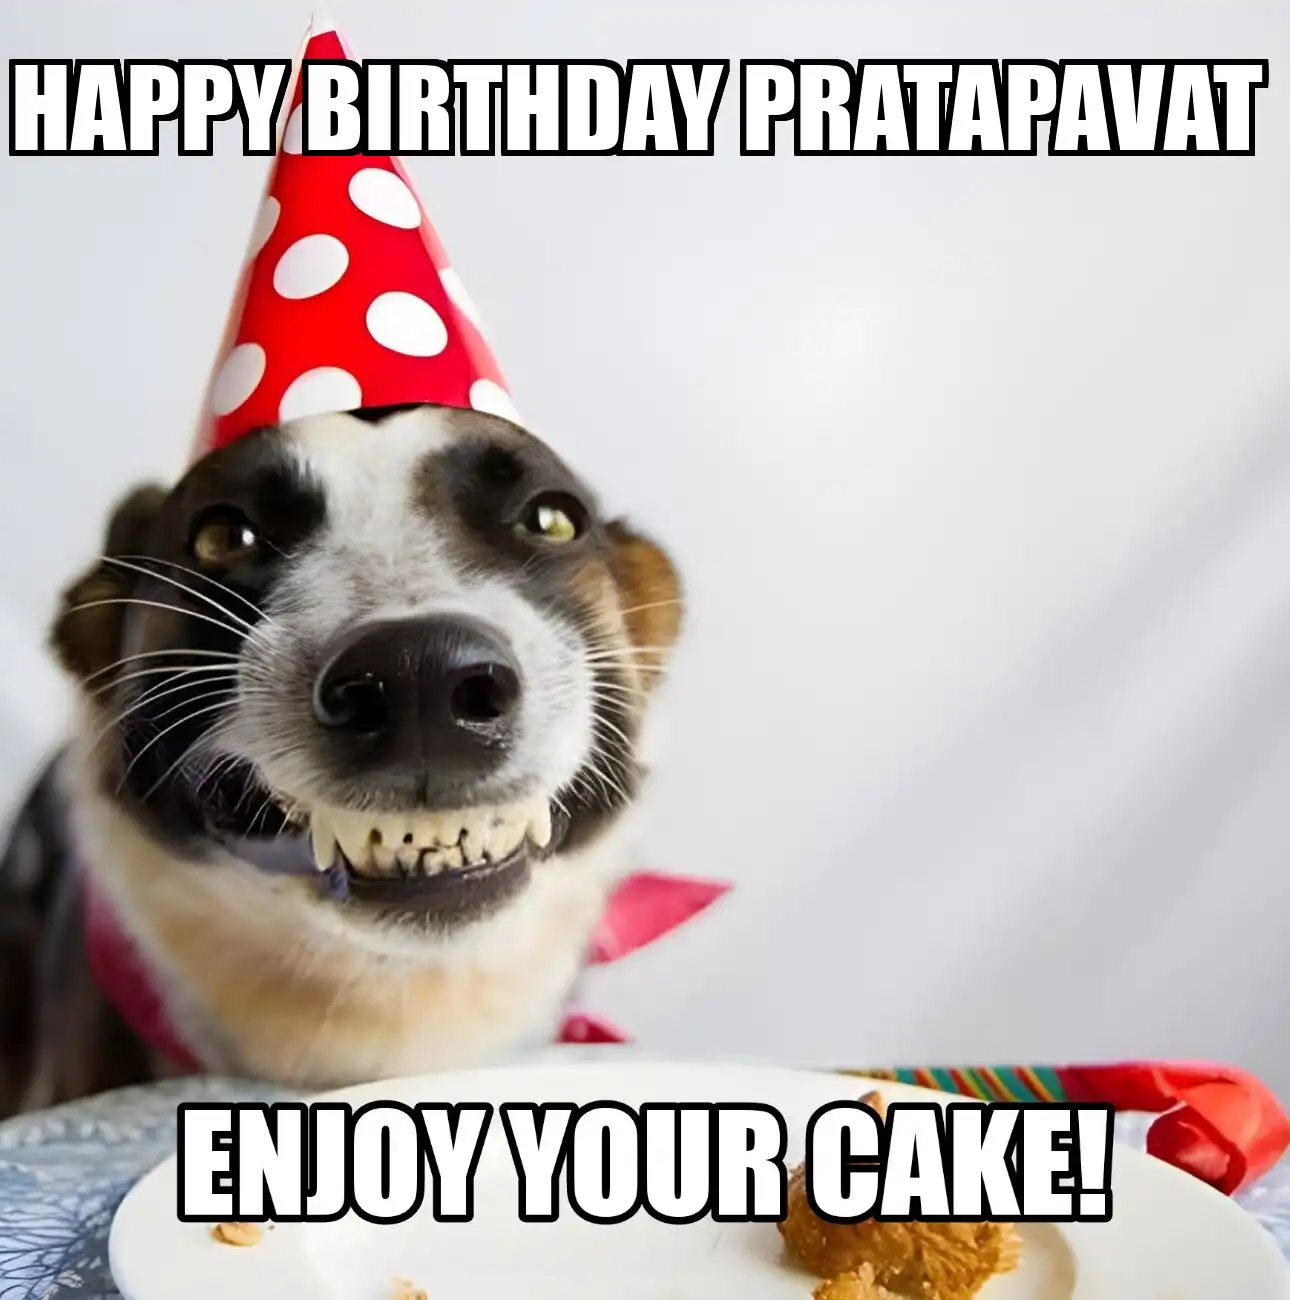 Happy Birthday Pratapavat Enjoy Your Cake Dog Meme